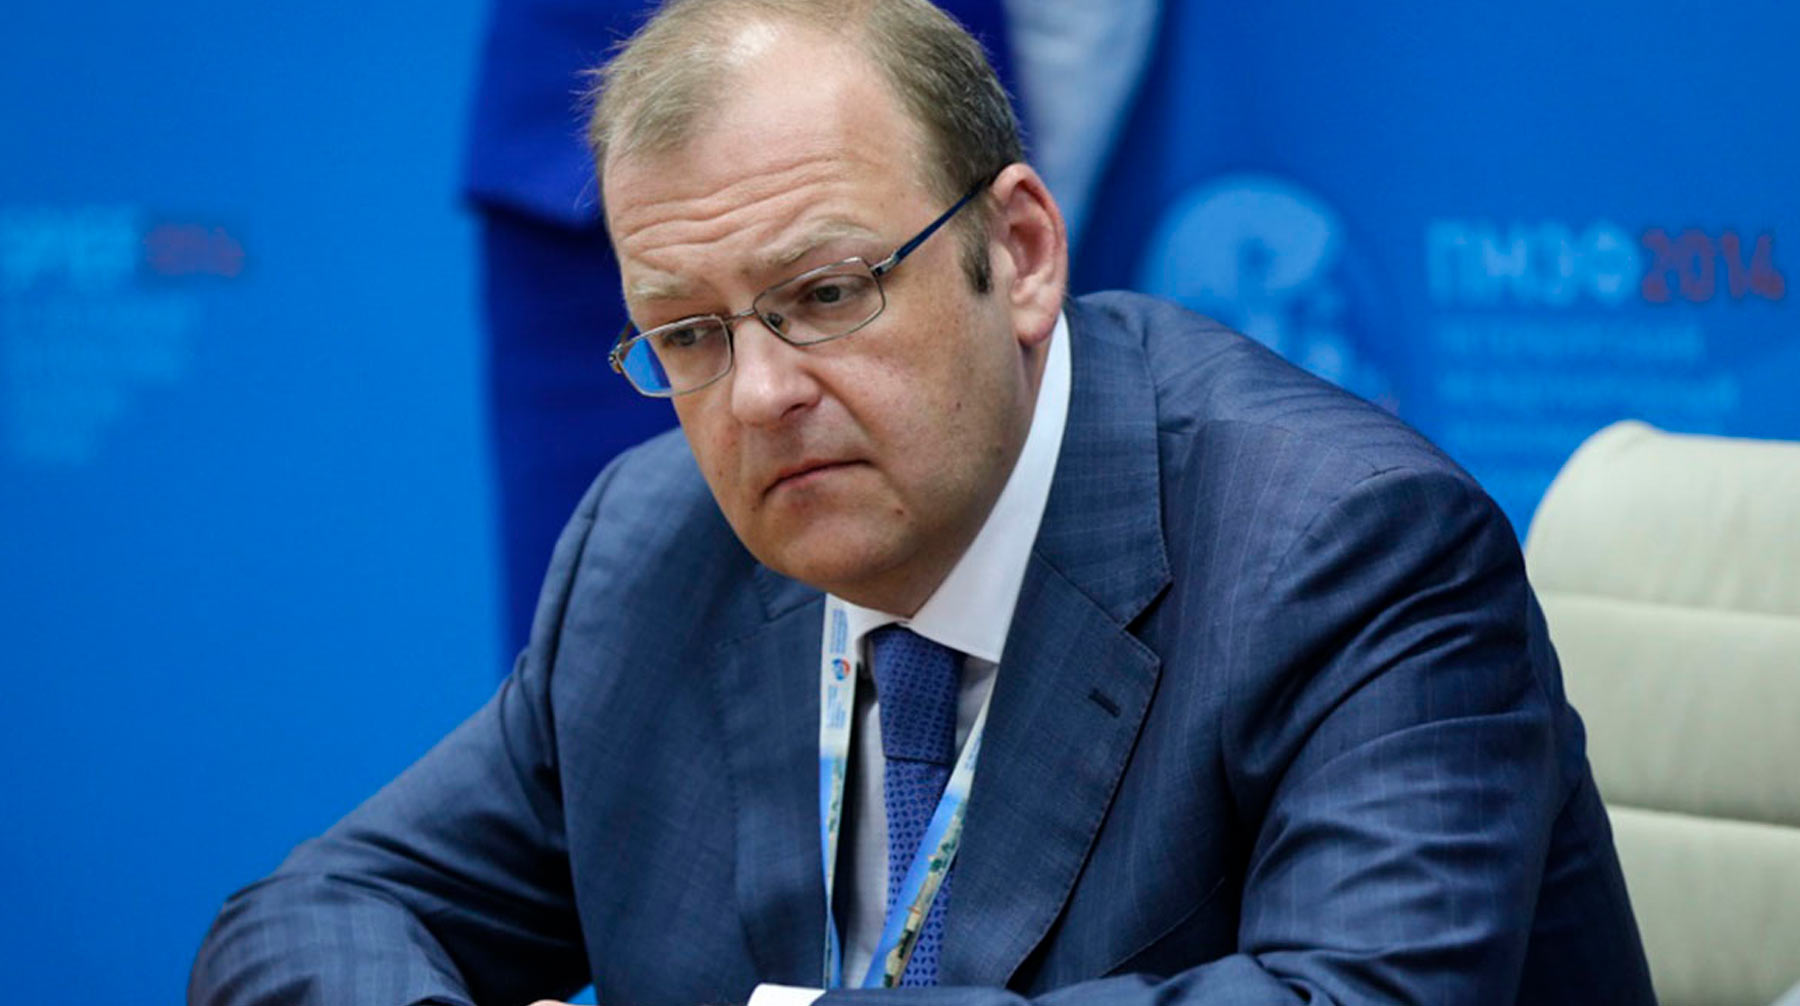 В кабинете у Анатолия Тихонова провели обыск Заместитель министра топлива и энергетики Анатолий Тихонов